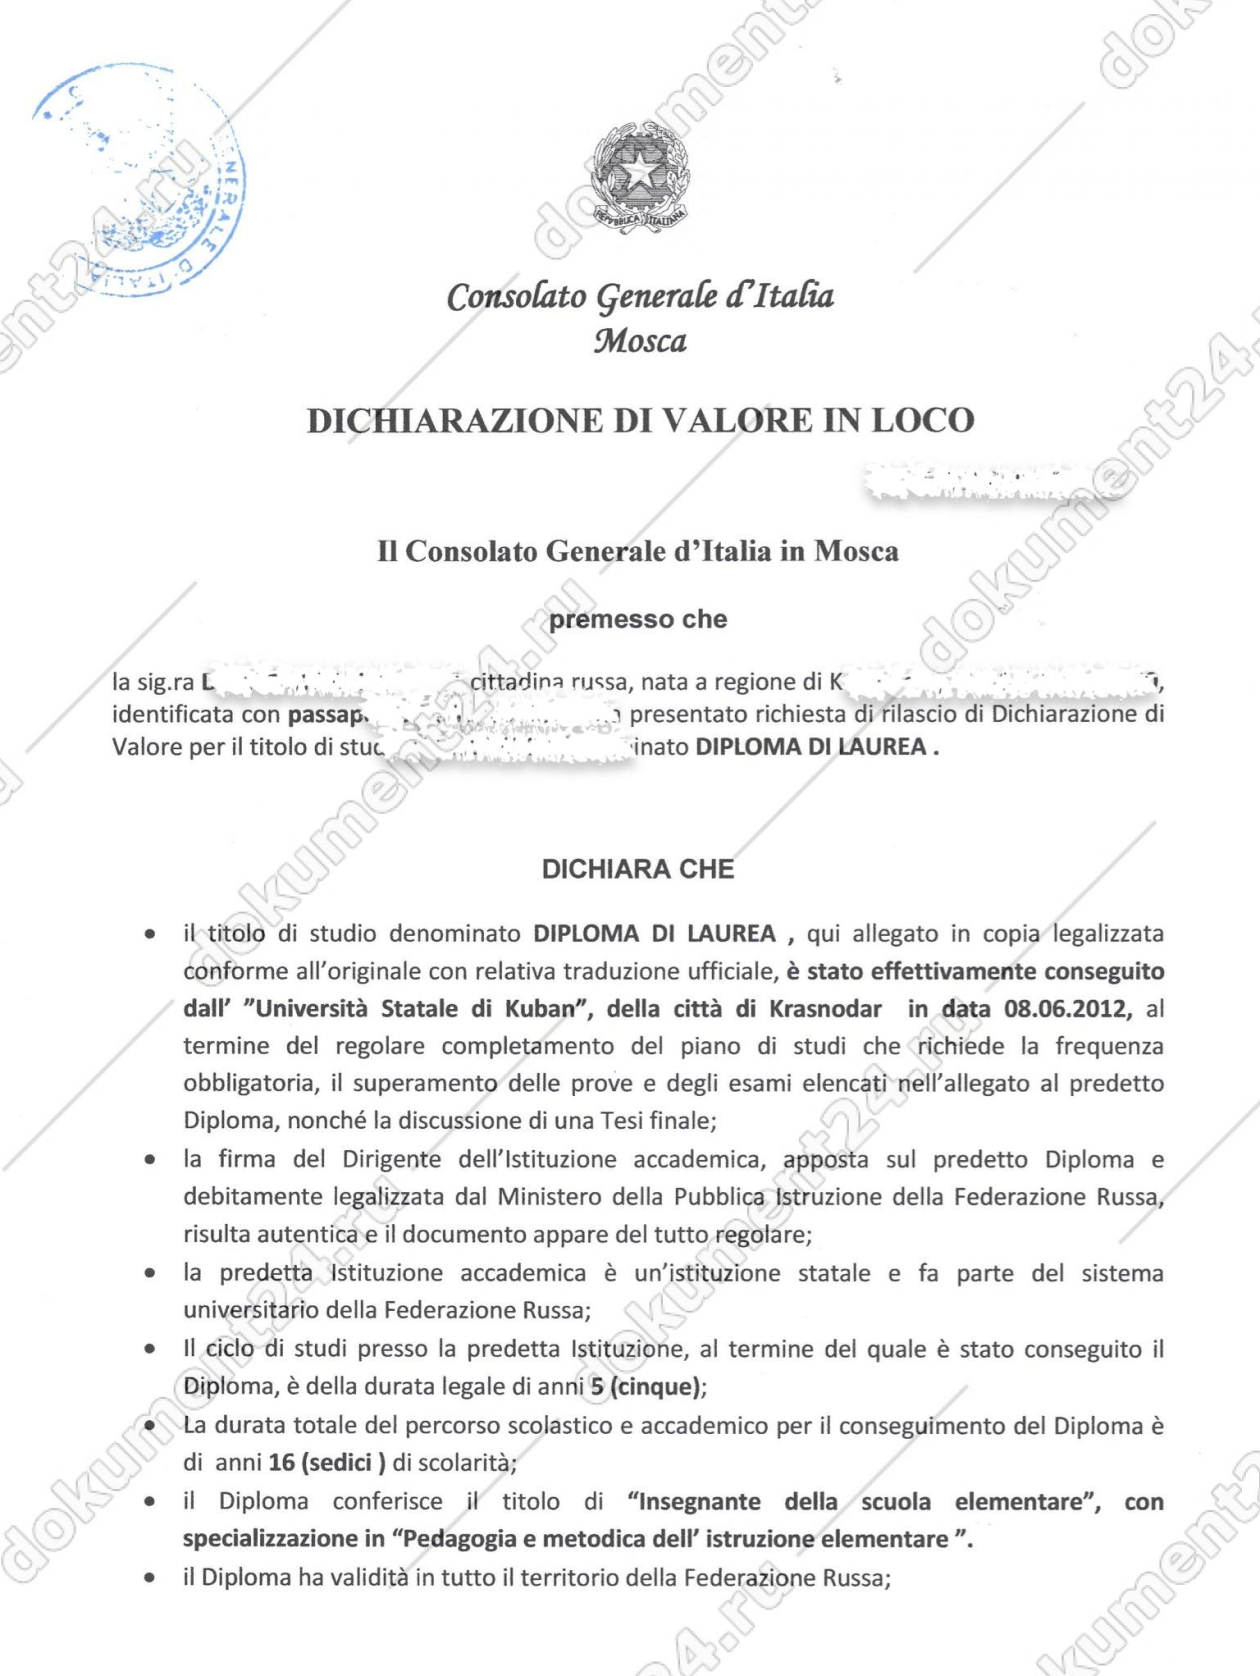 Dichiarazione di valore in loco — декларация о соответствии аттестата. Источник: document24.ru